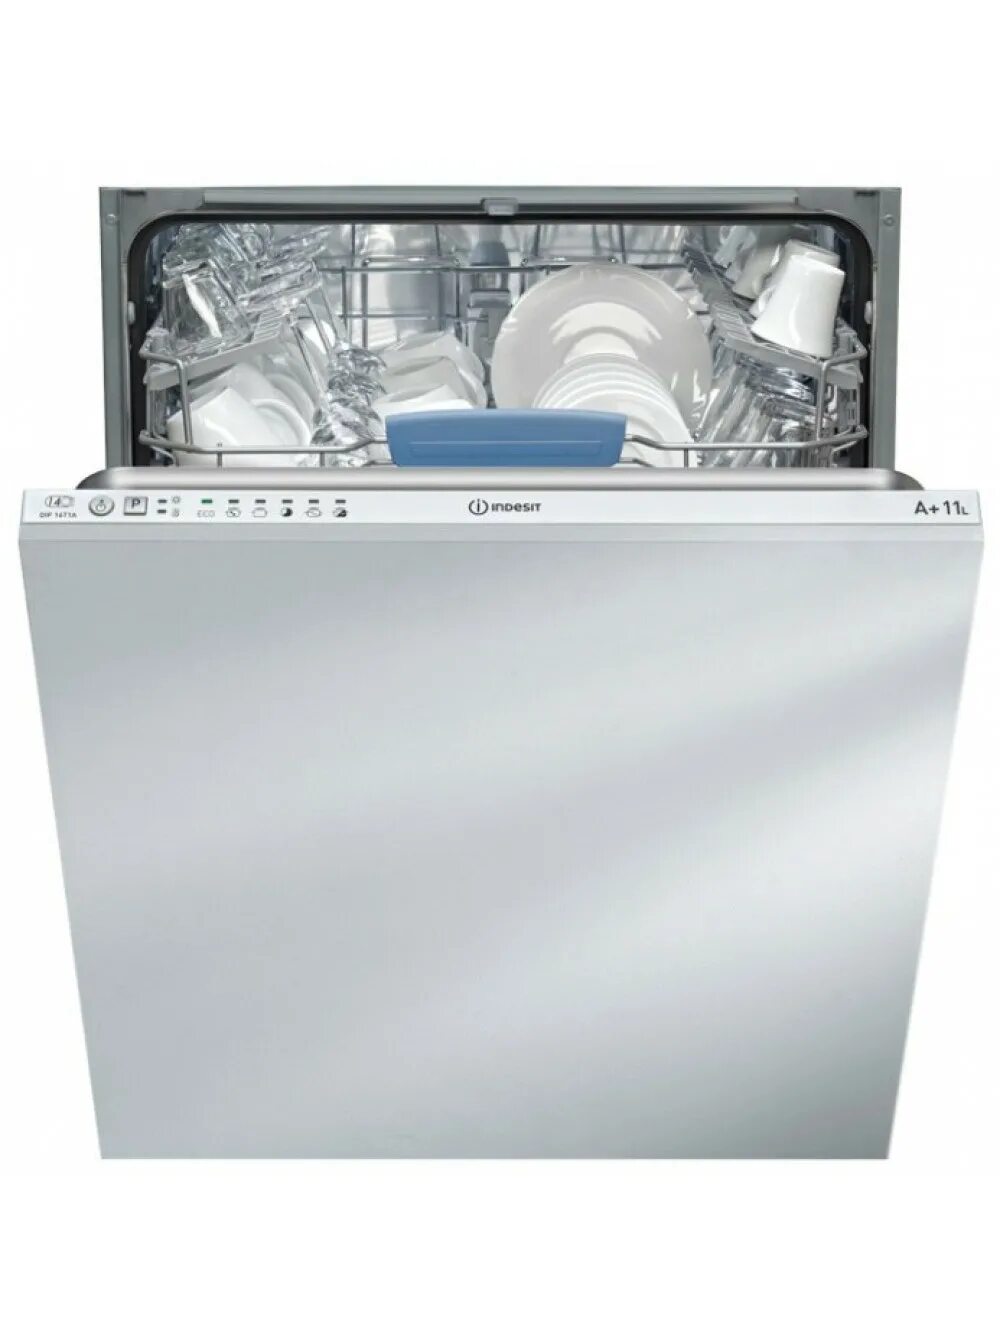 Купить посудомоечные машины встраиваемые недорого. Посудомоечная машина Indesit DIF 04b1. Посудомоечная машина Indesit DIFP 18t1 CA. Посудомоечная машина Indesit DIF 14. Посудомоечная машина Индезит 60 см встраиваемая.